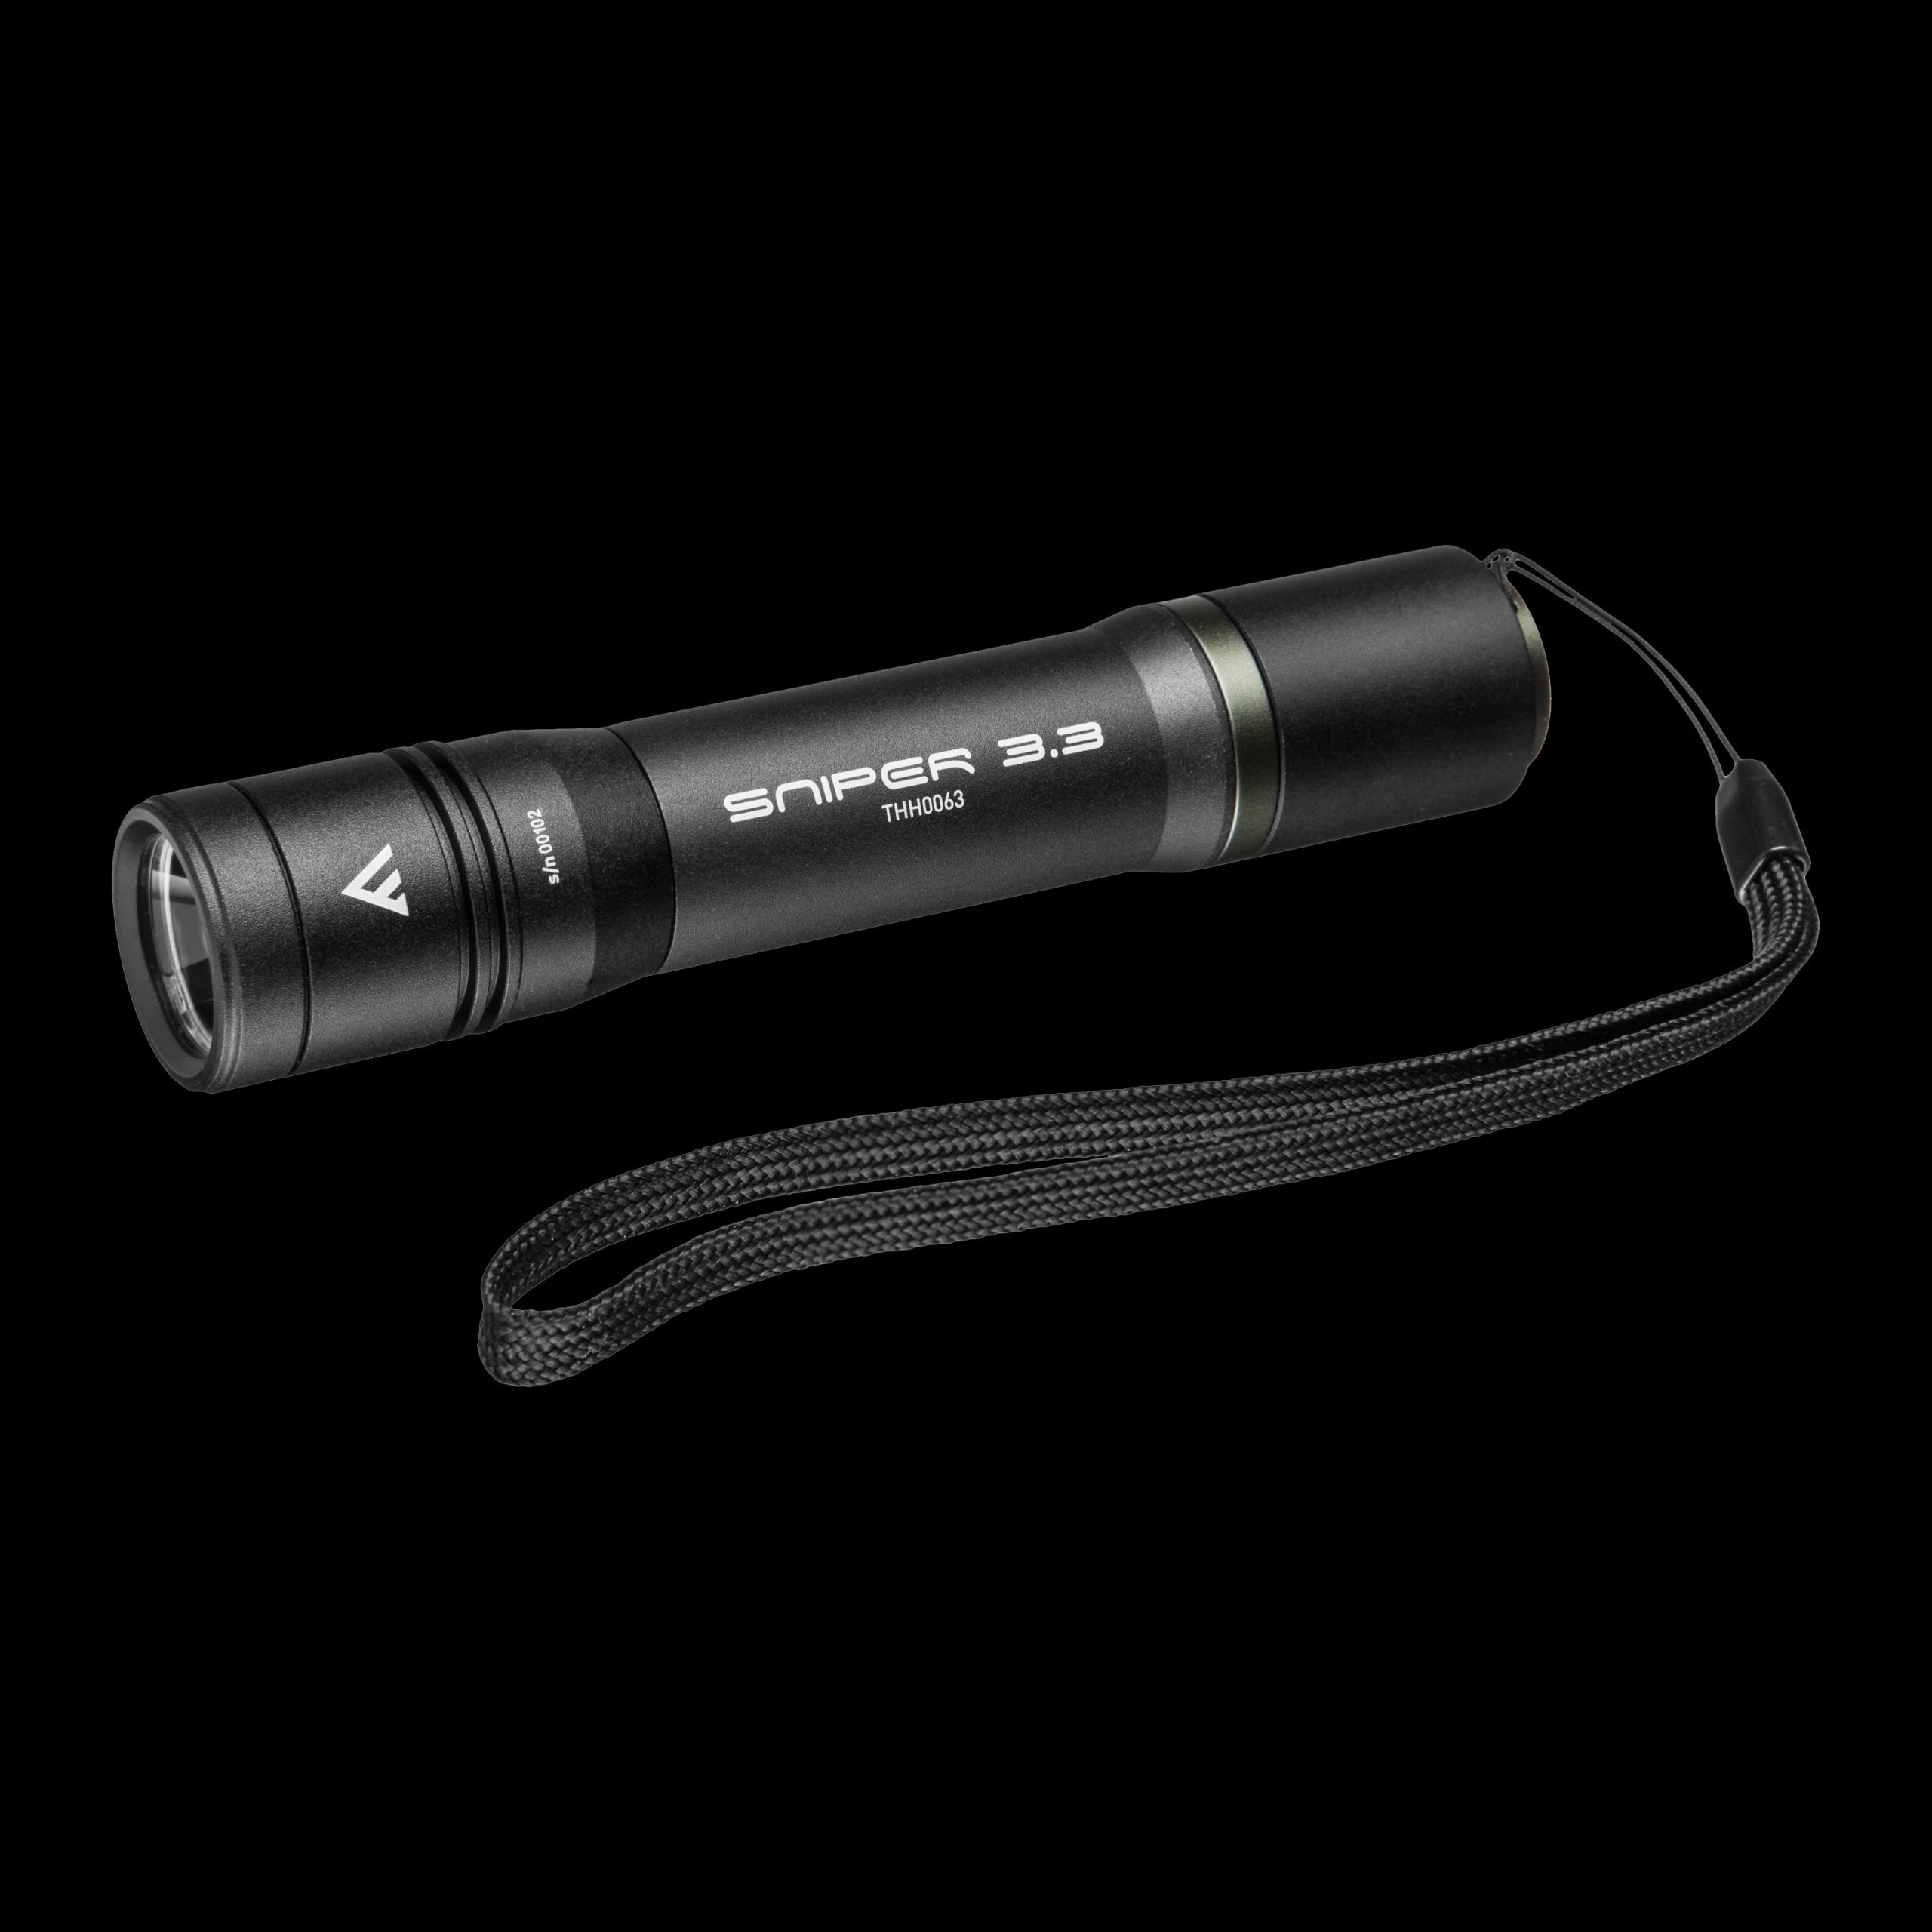 Hand-Taschenlampe mit Fokusfunktion, 1020 lm, SNIPER 3.3